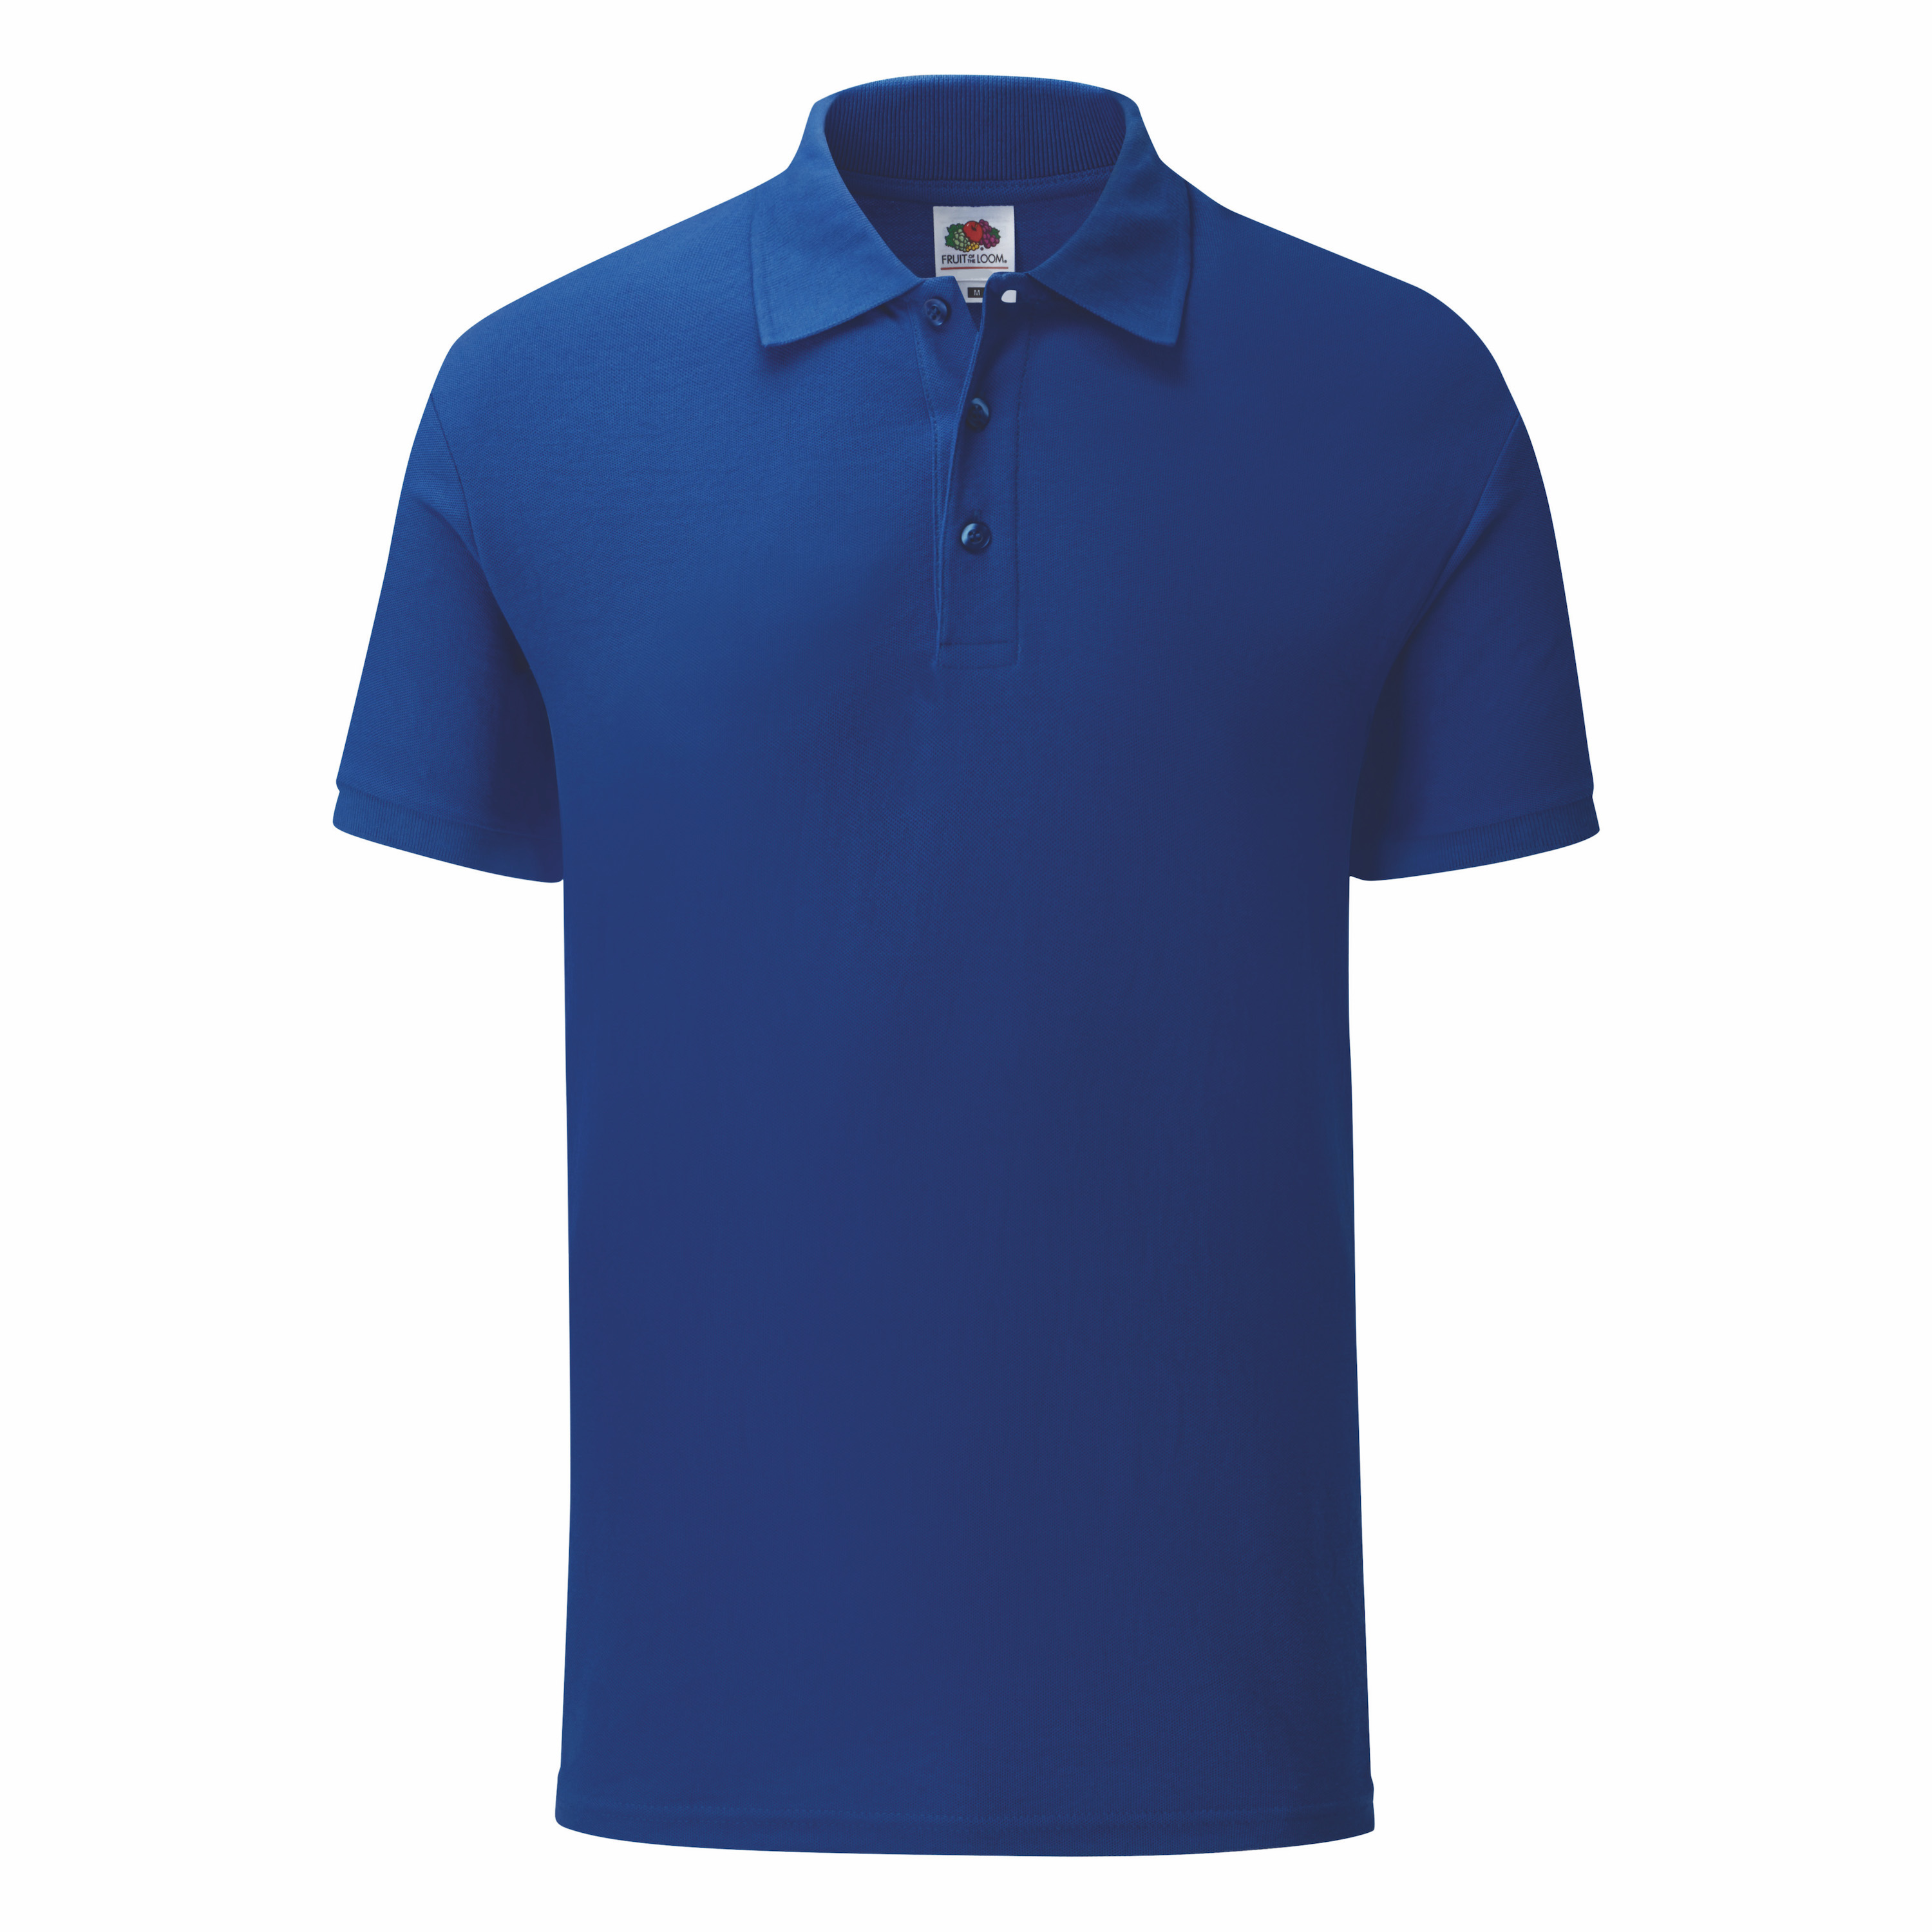 Koszulka męska Iconic Polo z odrywaną metką Fruit of the Loom Cobalt Blue